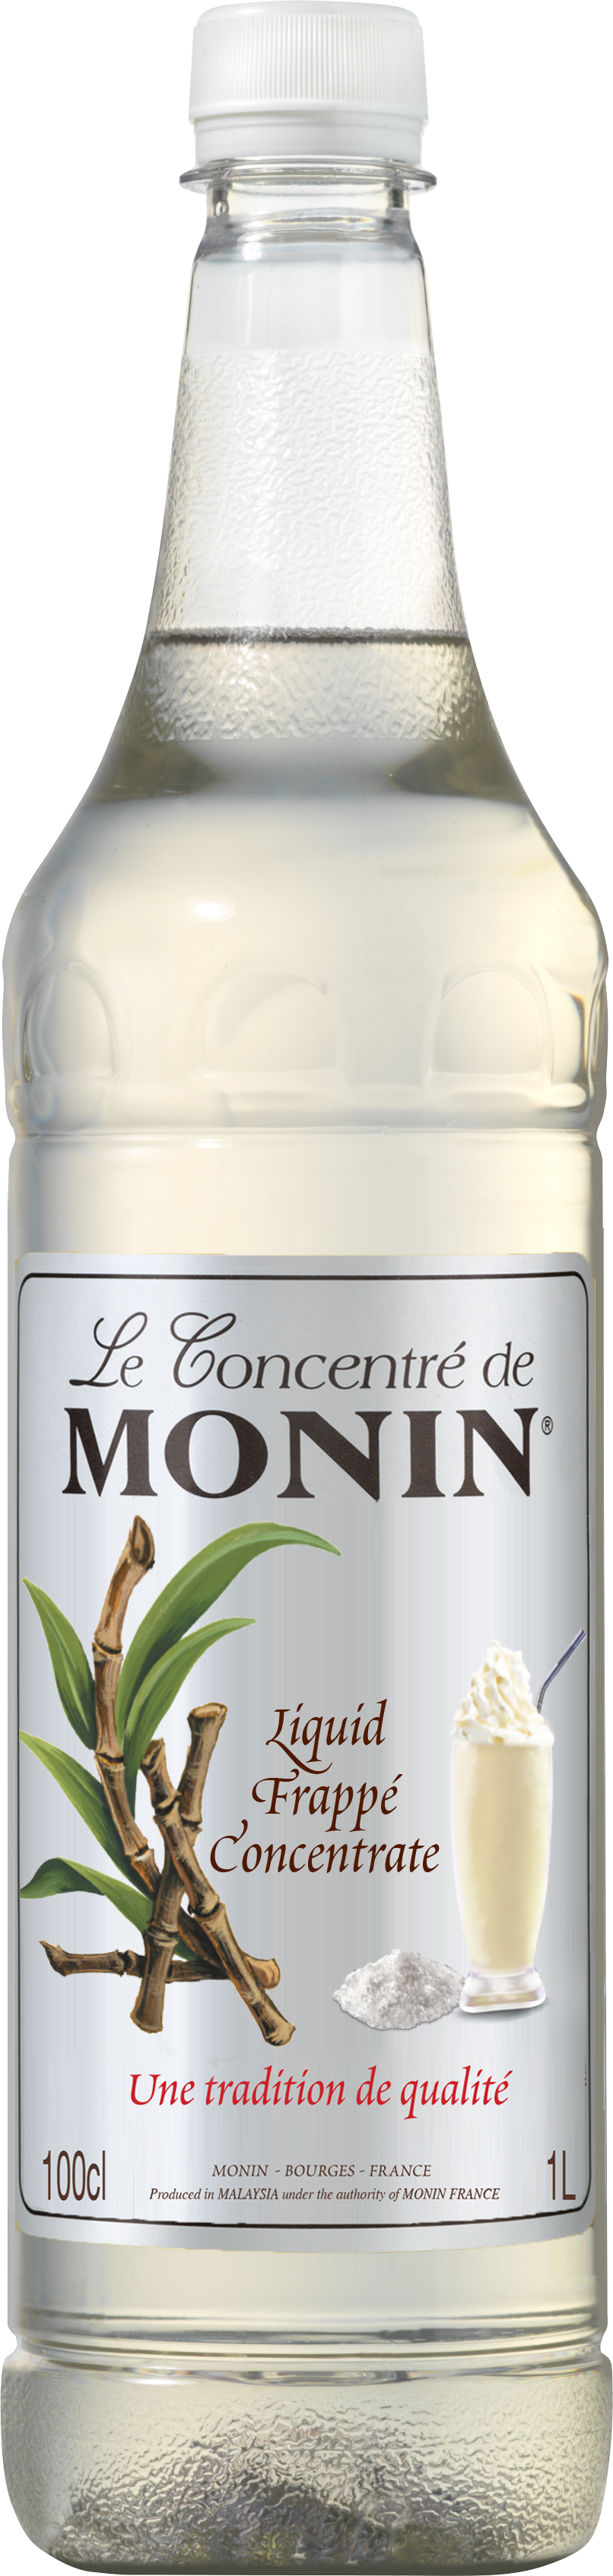 Le Concentré de MONIN Liquid Frappe